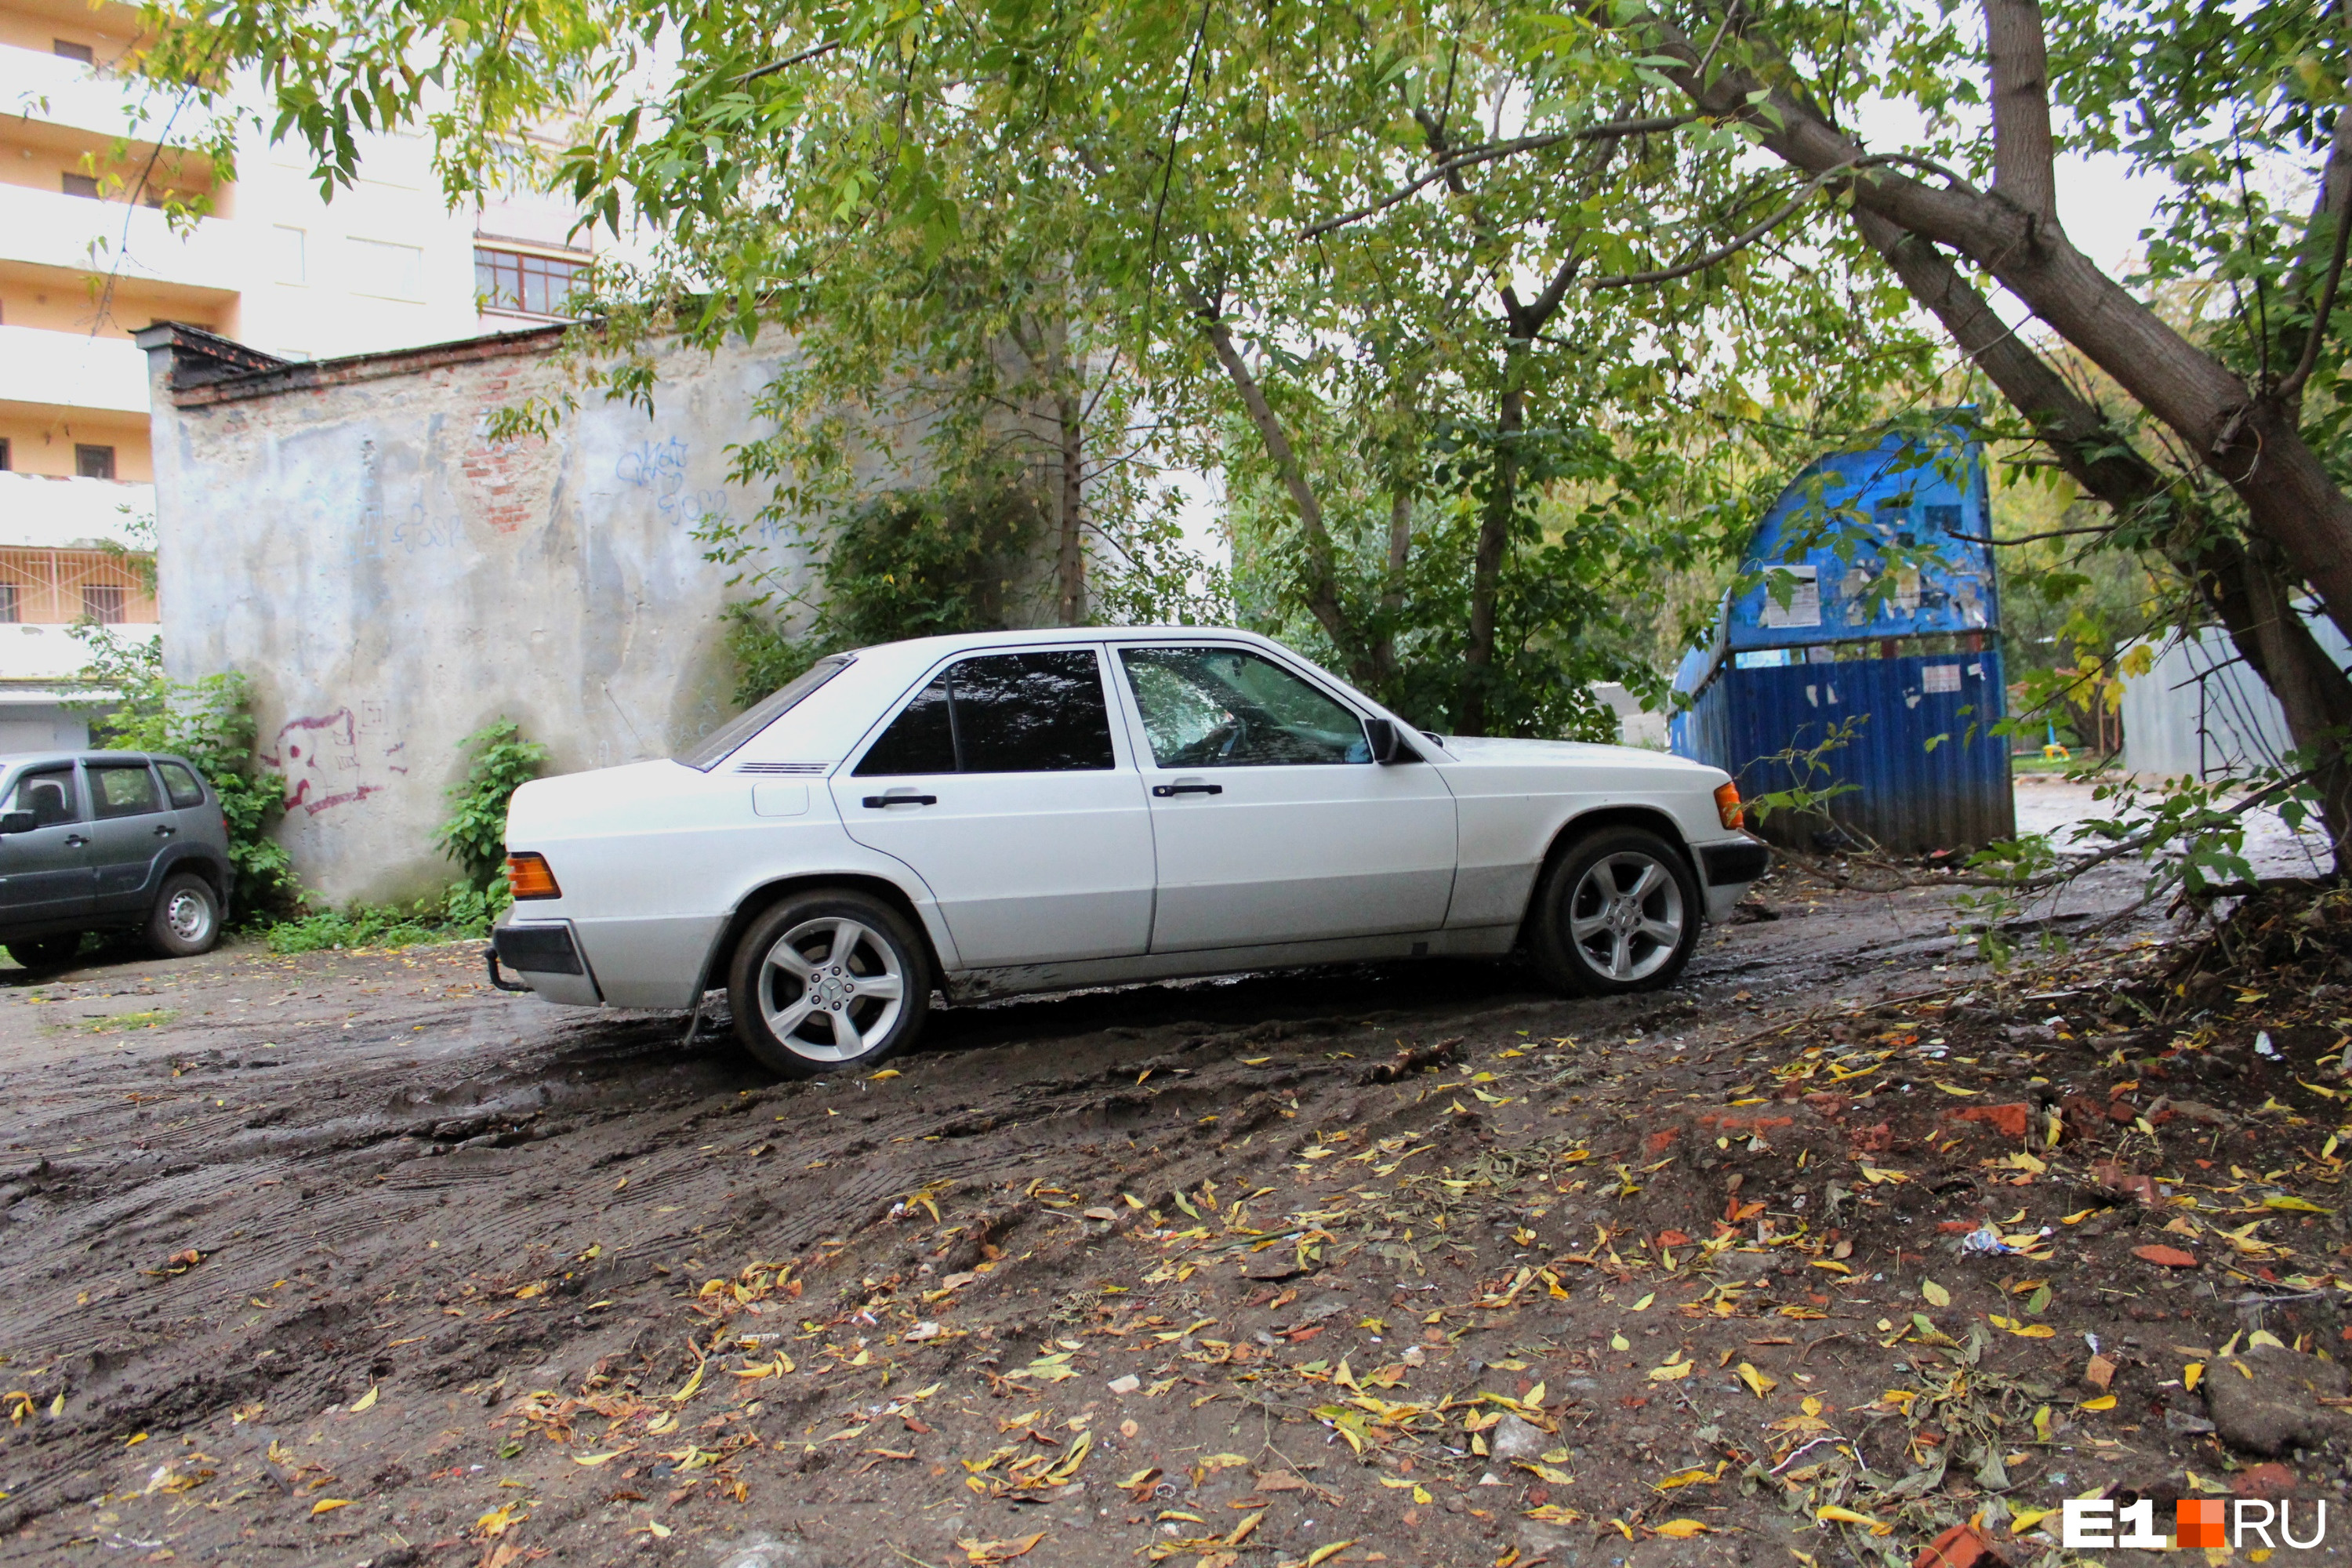 Местные жители паркуют автомобили на неблагоустроенной территории 